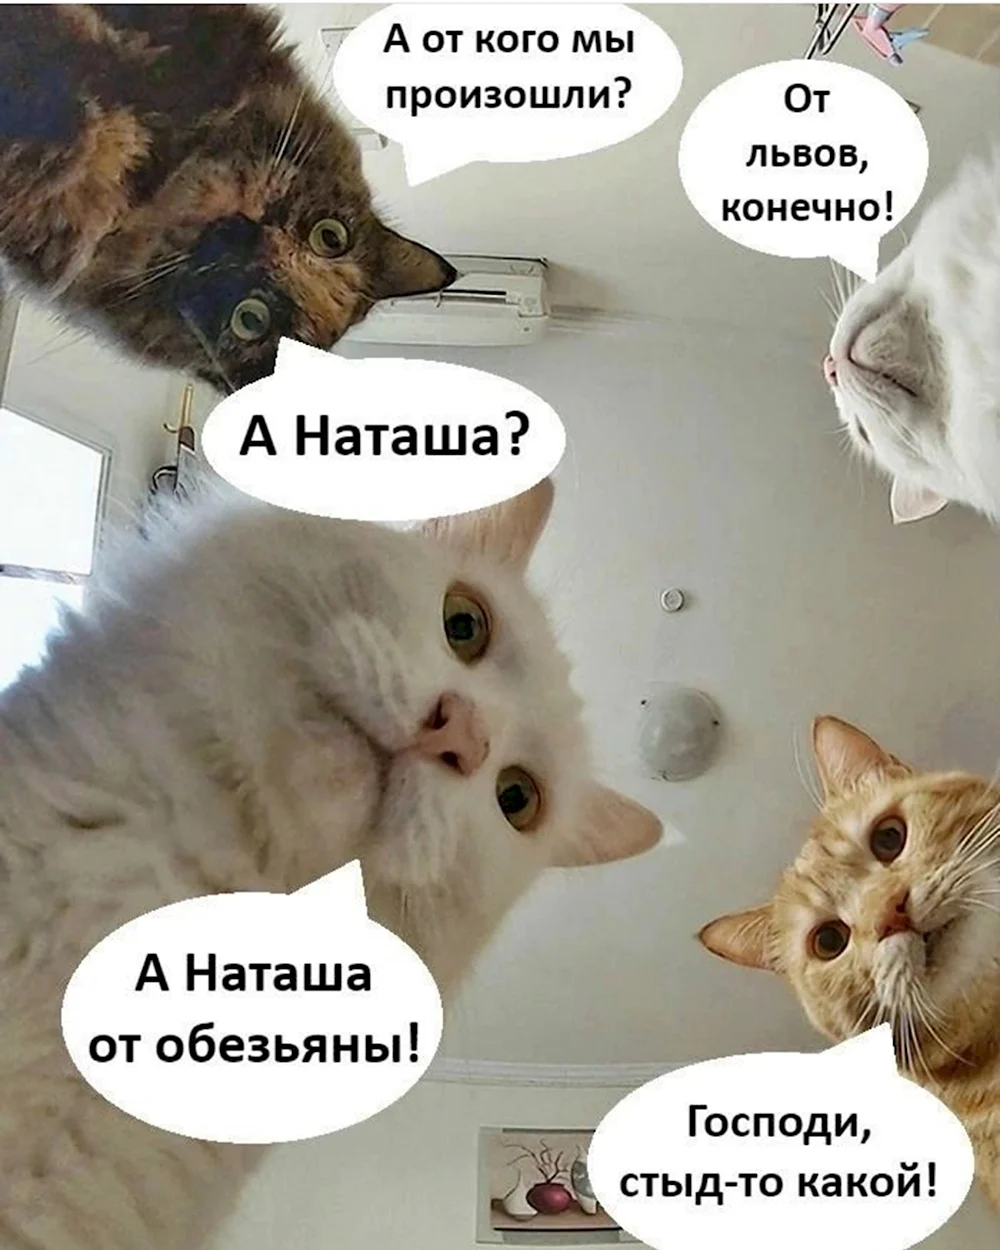 Наташины коты